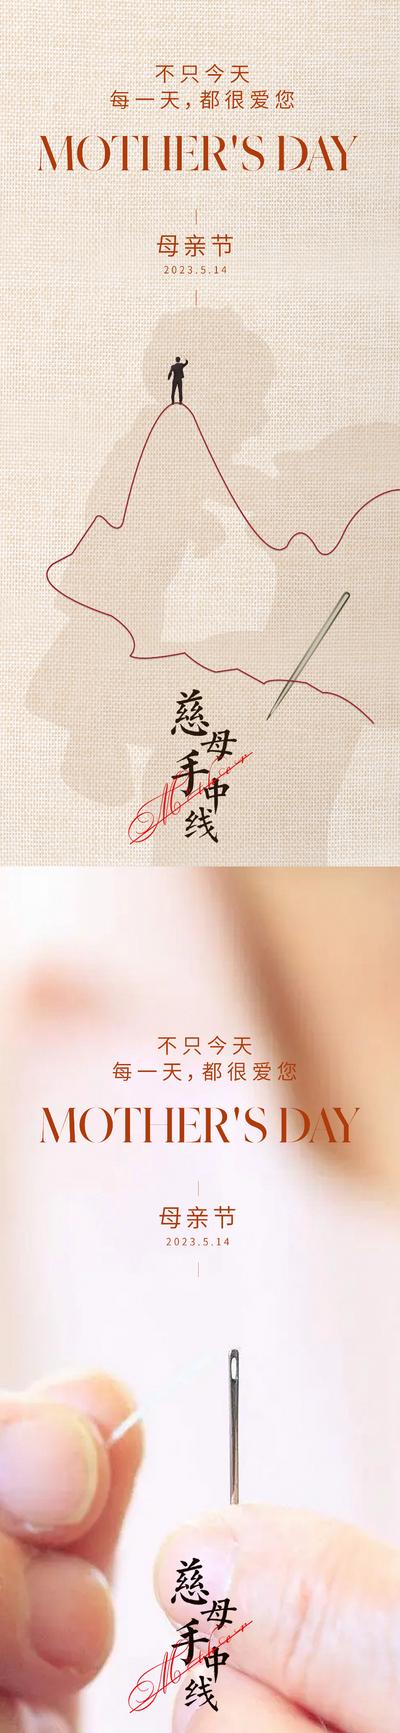 南门网 海报 地产 公历节日 母亲节 针线 剪影 温馨 系列